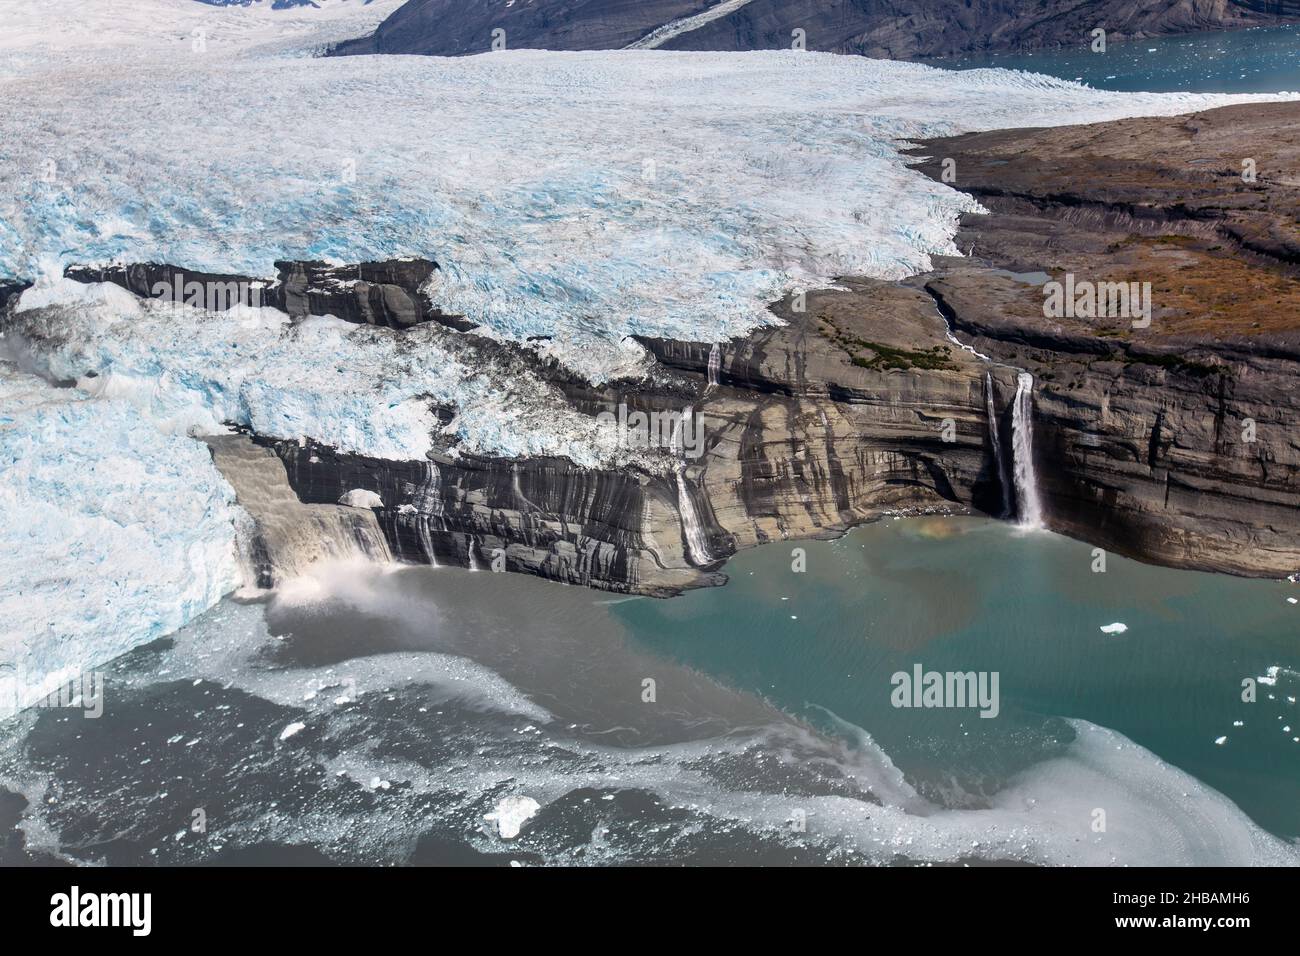 Das Wasser, das vom Guyot-Gletscher an seinem Endpunkt in der Icy Bay (Wrangell-St.. Elias National Park, Alaska) sind mit Schwebeeismehl bedeckt. Der Unterschied zwischen dem hochkonzentrierten Sediment in der Bucht nahe des Gletschers und dem des verdünnten Wassers rechts ist auffällig. Gletscherlandformen: Gletschermehl Eine einzigartige, optimierte Version eines Bildes von NPS Ranger JW Frank; Quelle: NPS/Jacob W. Frank Stockfoto